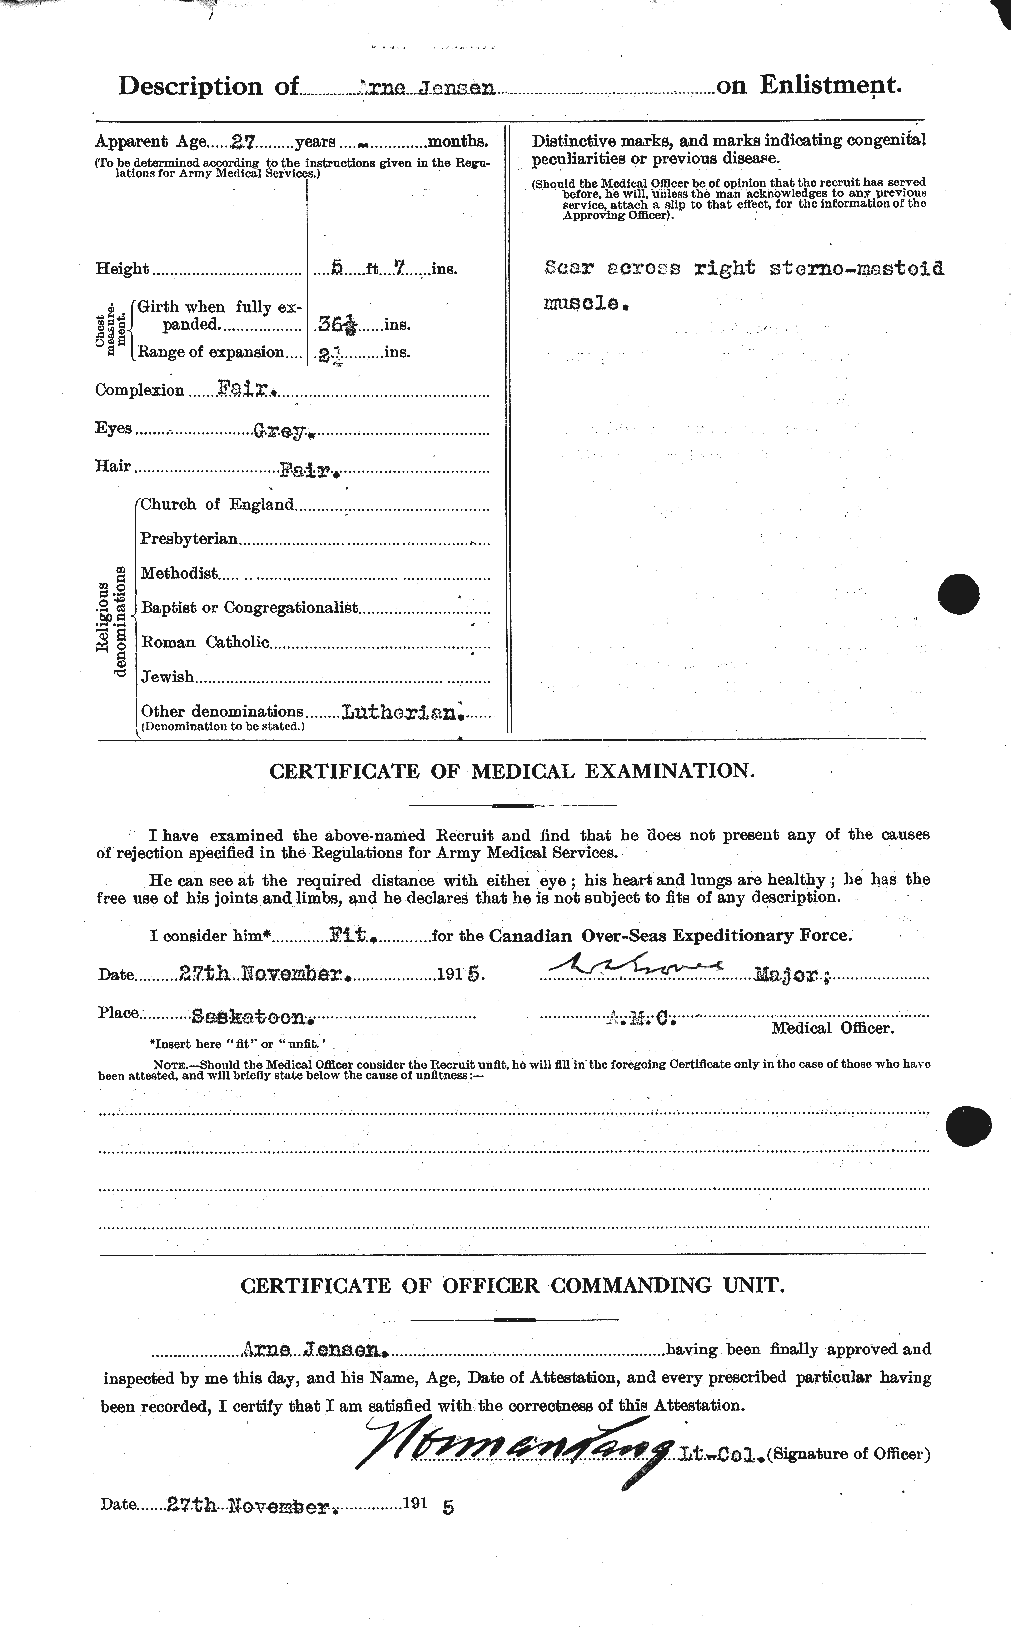 Dossiers du Personnel de la Première Guerre mondiale - CEC 421541b